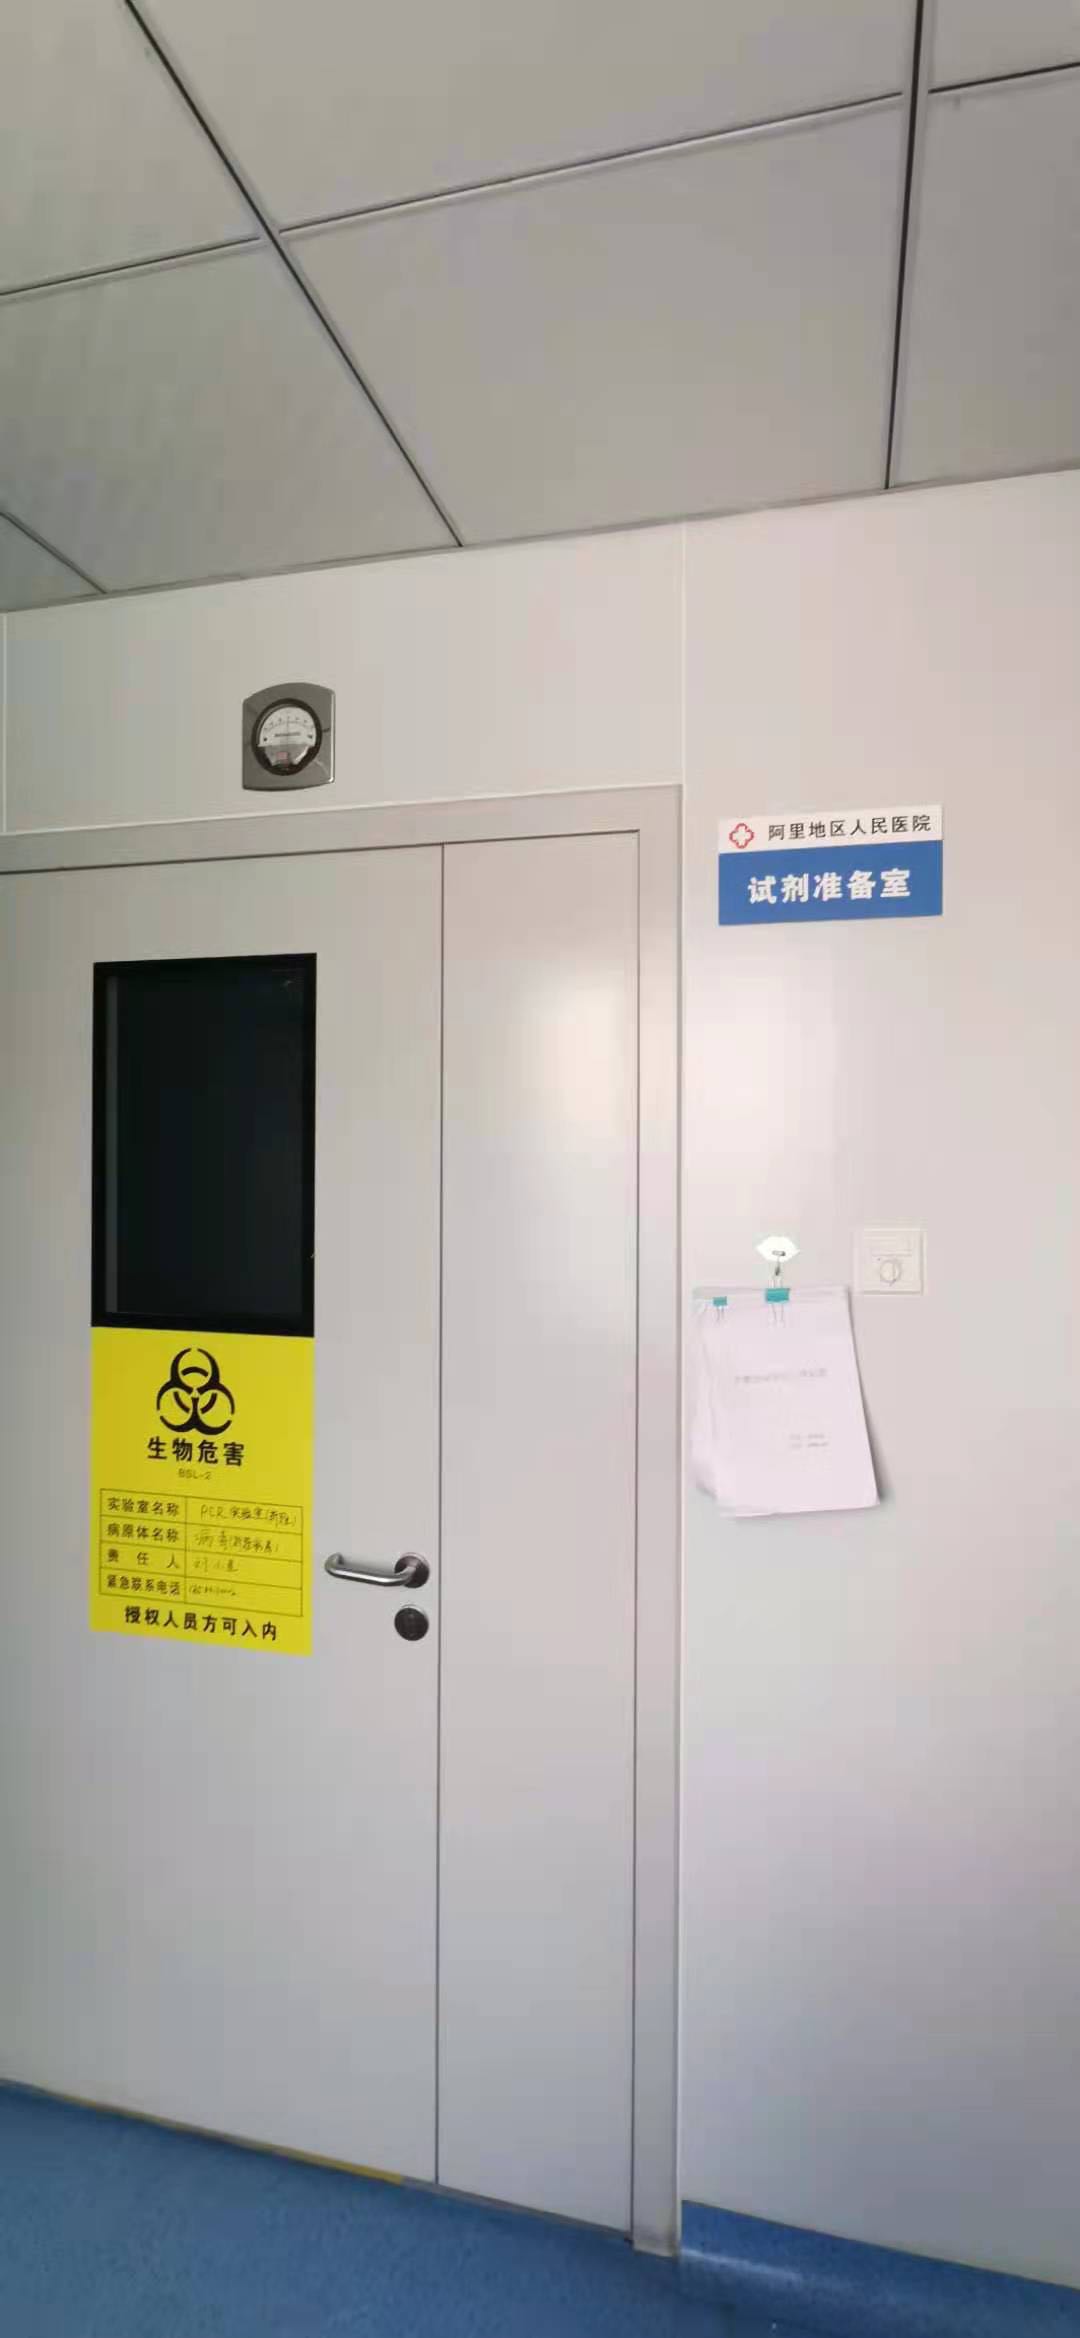 安徽省淮北市生物安全柜环境检测 第三方机构--安衡检测